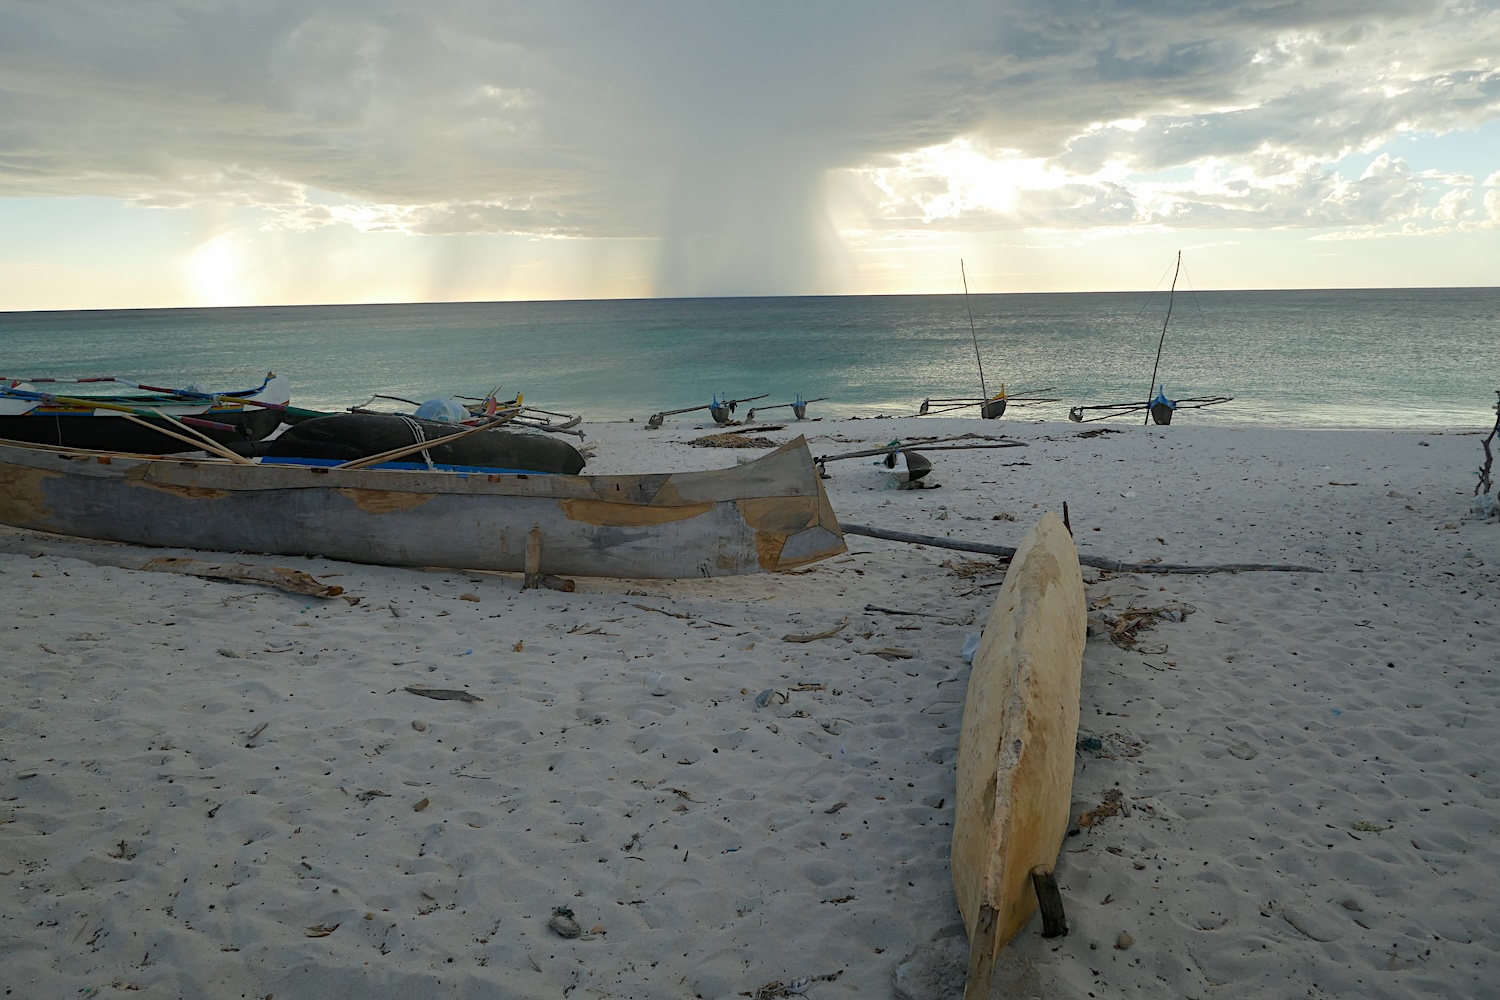 En fin de journée, les pirogues traditionnelles de pêche sont posées sur la plage jusqu’à la prochaine sortie en mer © Globe Reporters